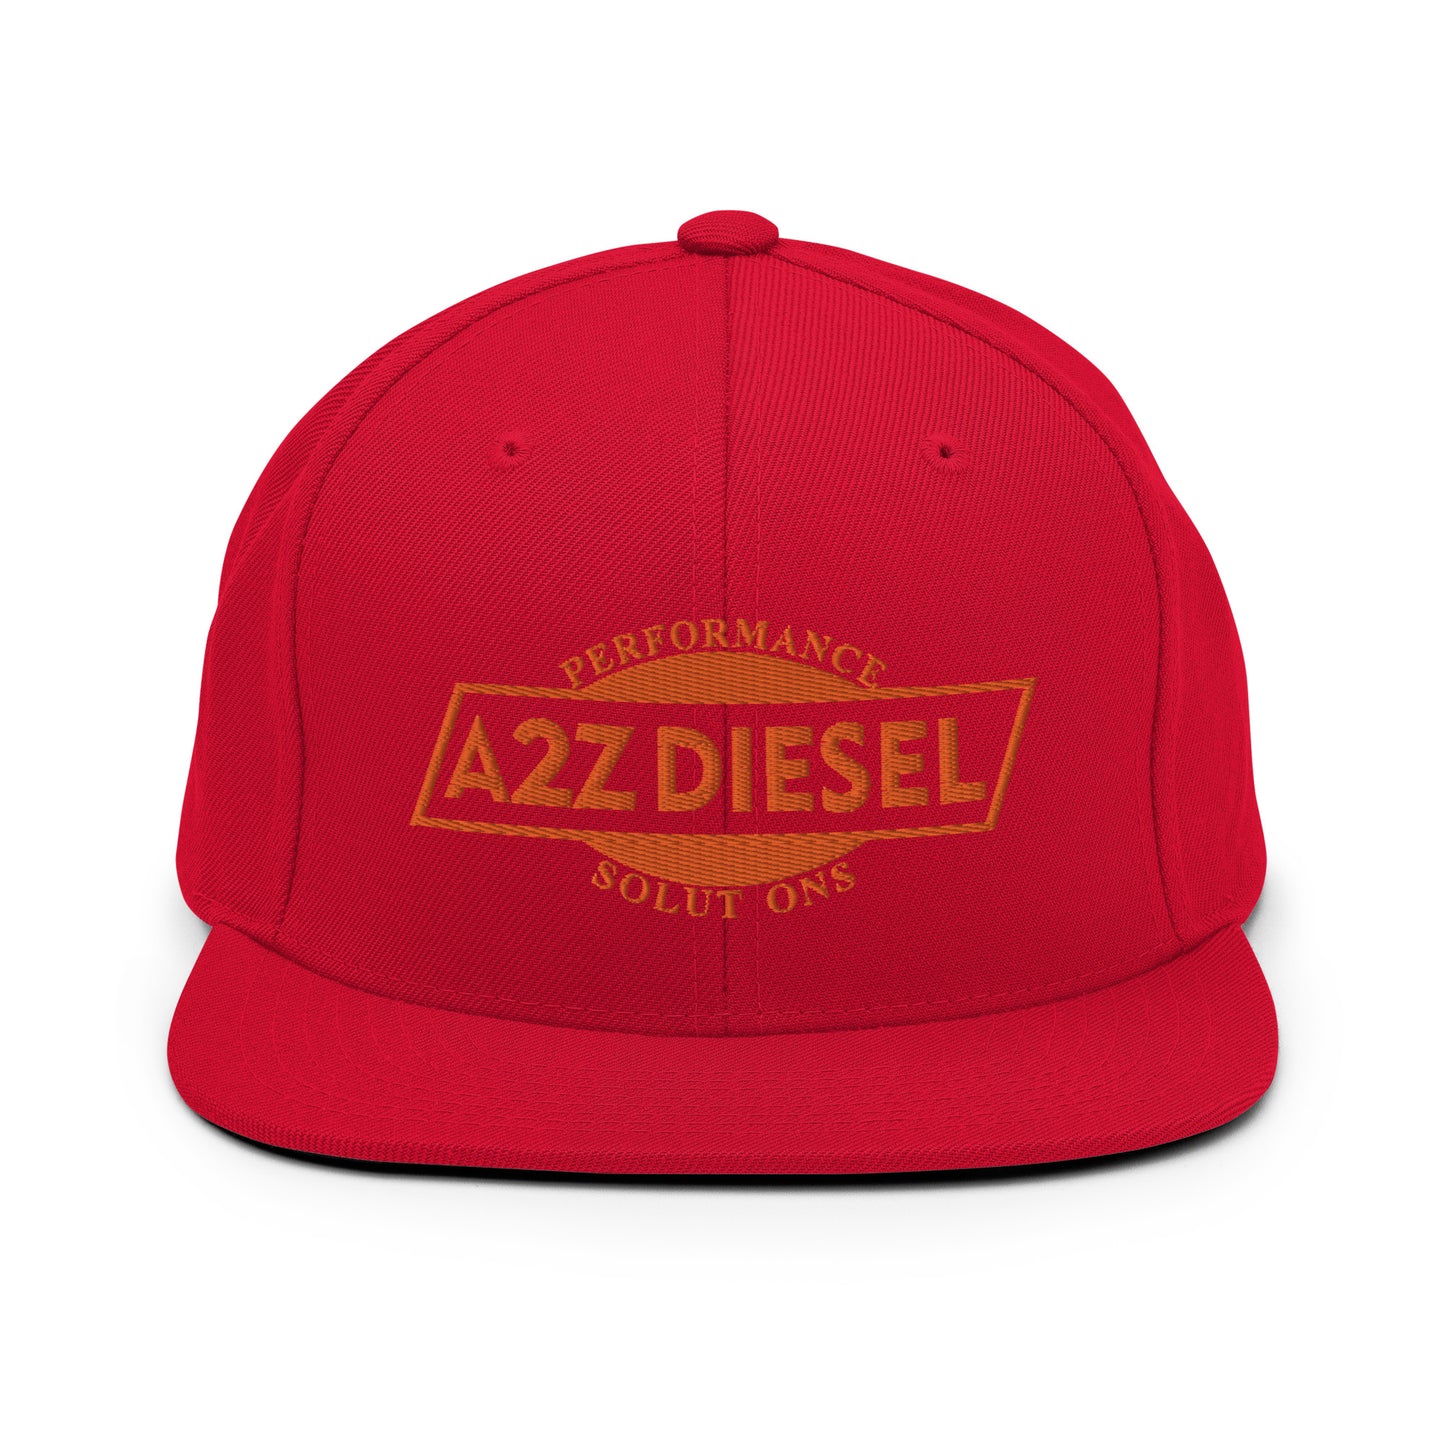 A2Z Diesel Flatbill Snap Back